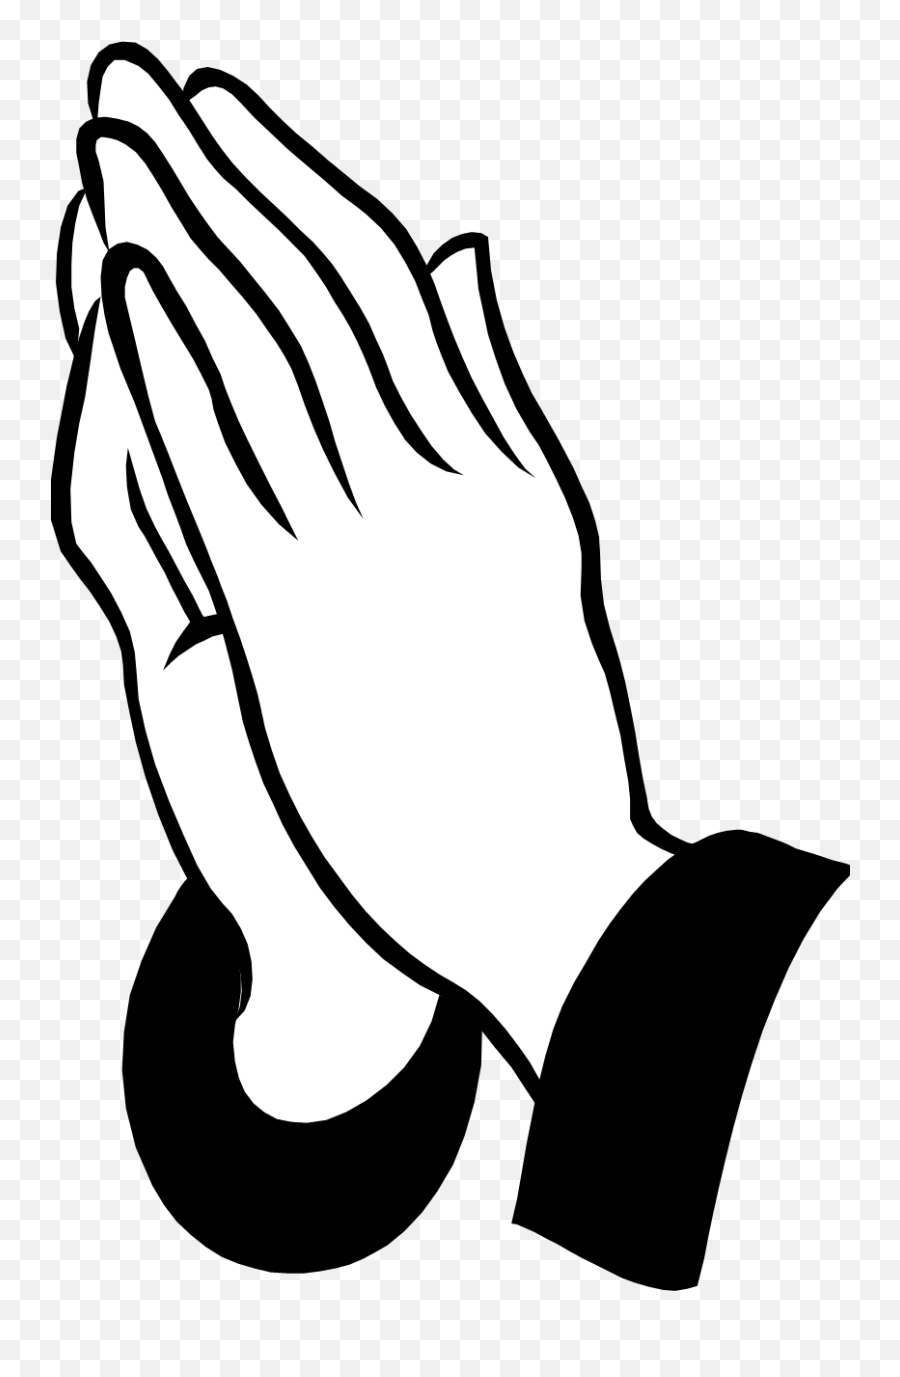 9 Facebook Icon Praying Hands Images - Praying Hands Clipart Emoji,Praying Hand Emoji